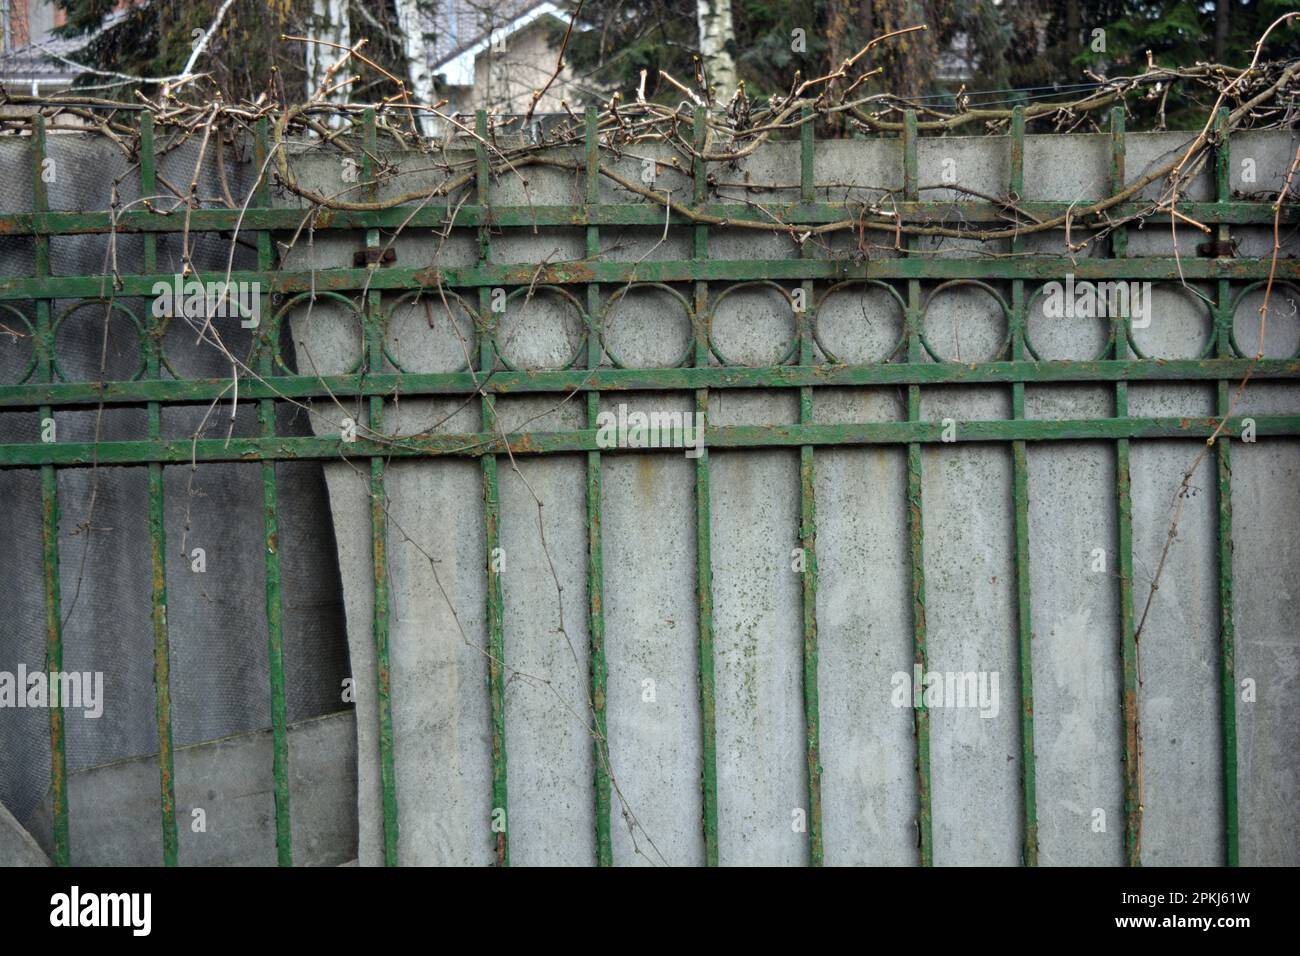 Una vecchia recinzione in metallo forgiato con cime, spille, anelli dell'epoca sovietica dipinti con vernice verde con ardesia grigia. Foto Stock